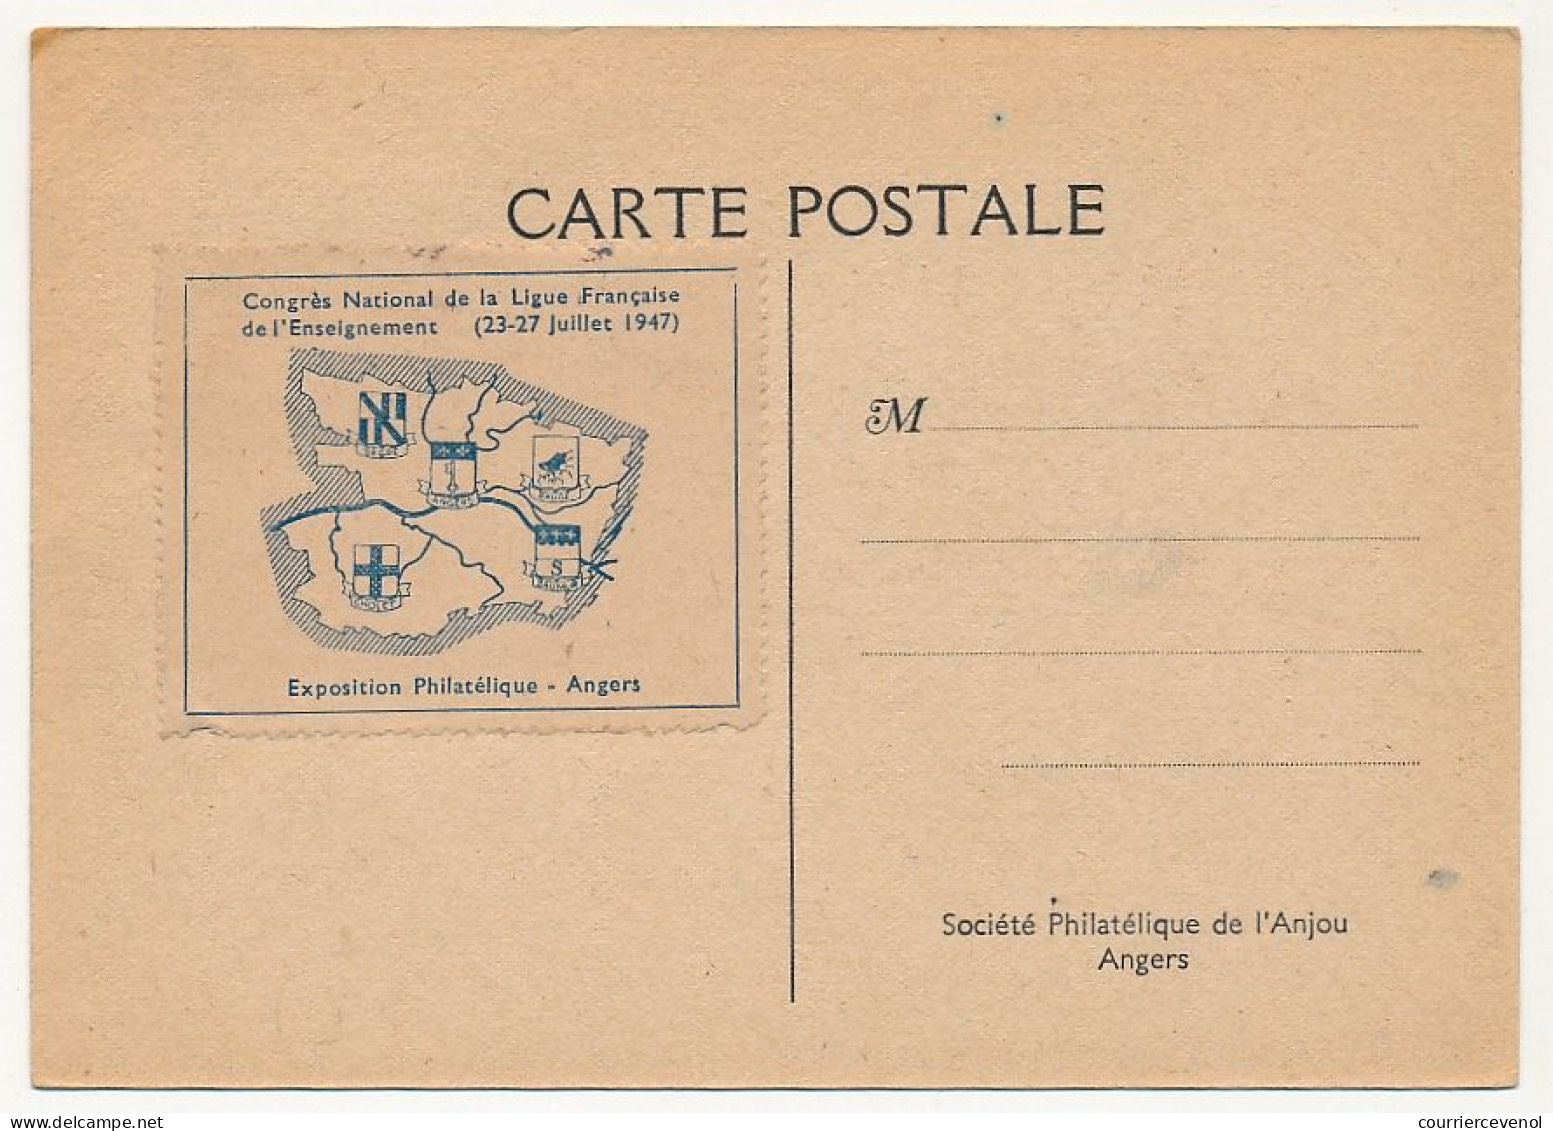 FRANCE - Carte Congrès National Ligue De L'Enseignement Angers 23/27 Juillet 1947 - Obl. Temporaire - Vignette Au Dos - Commemorative Postmarks